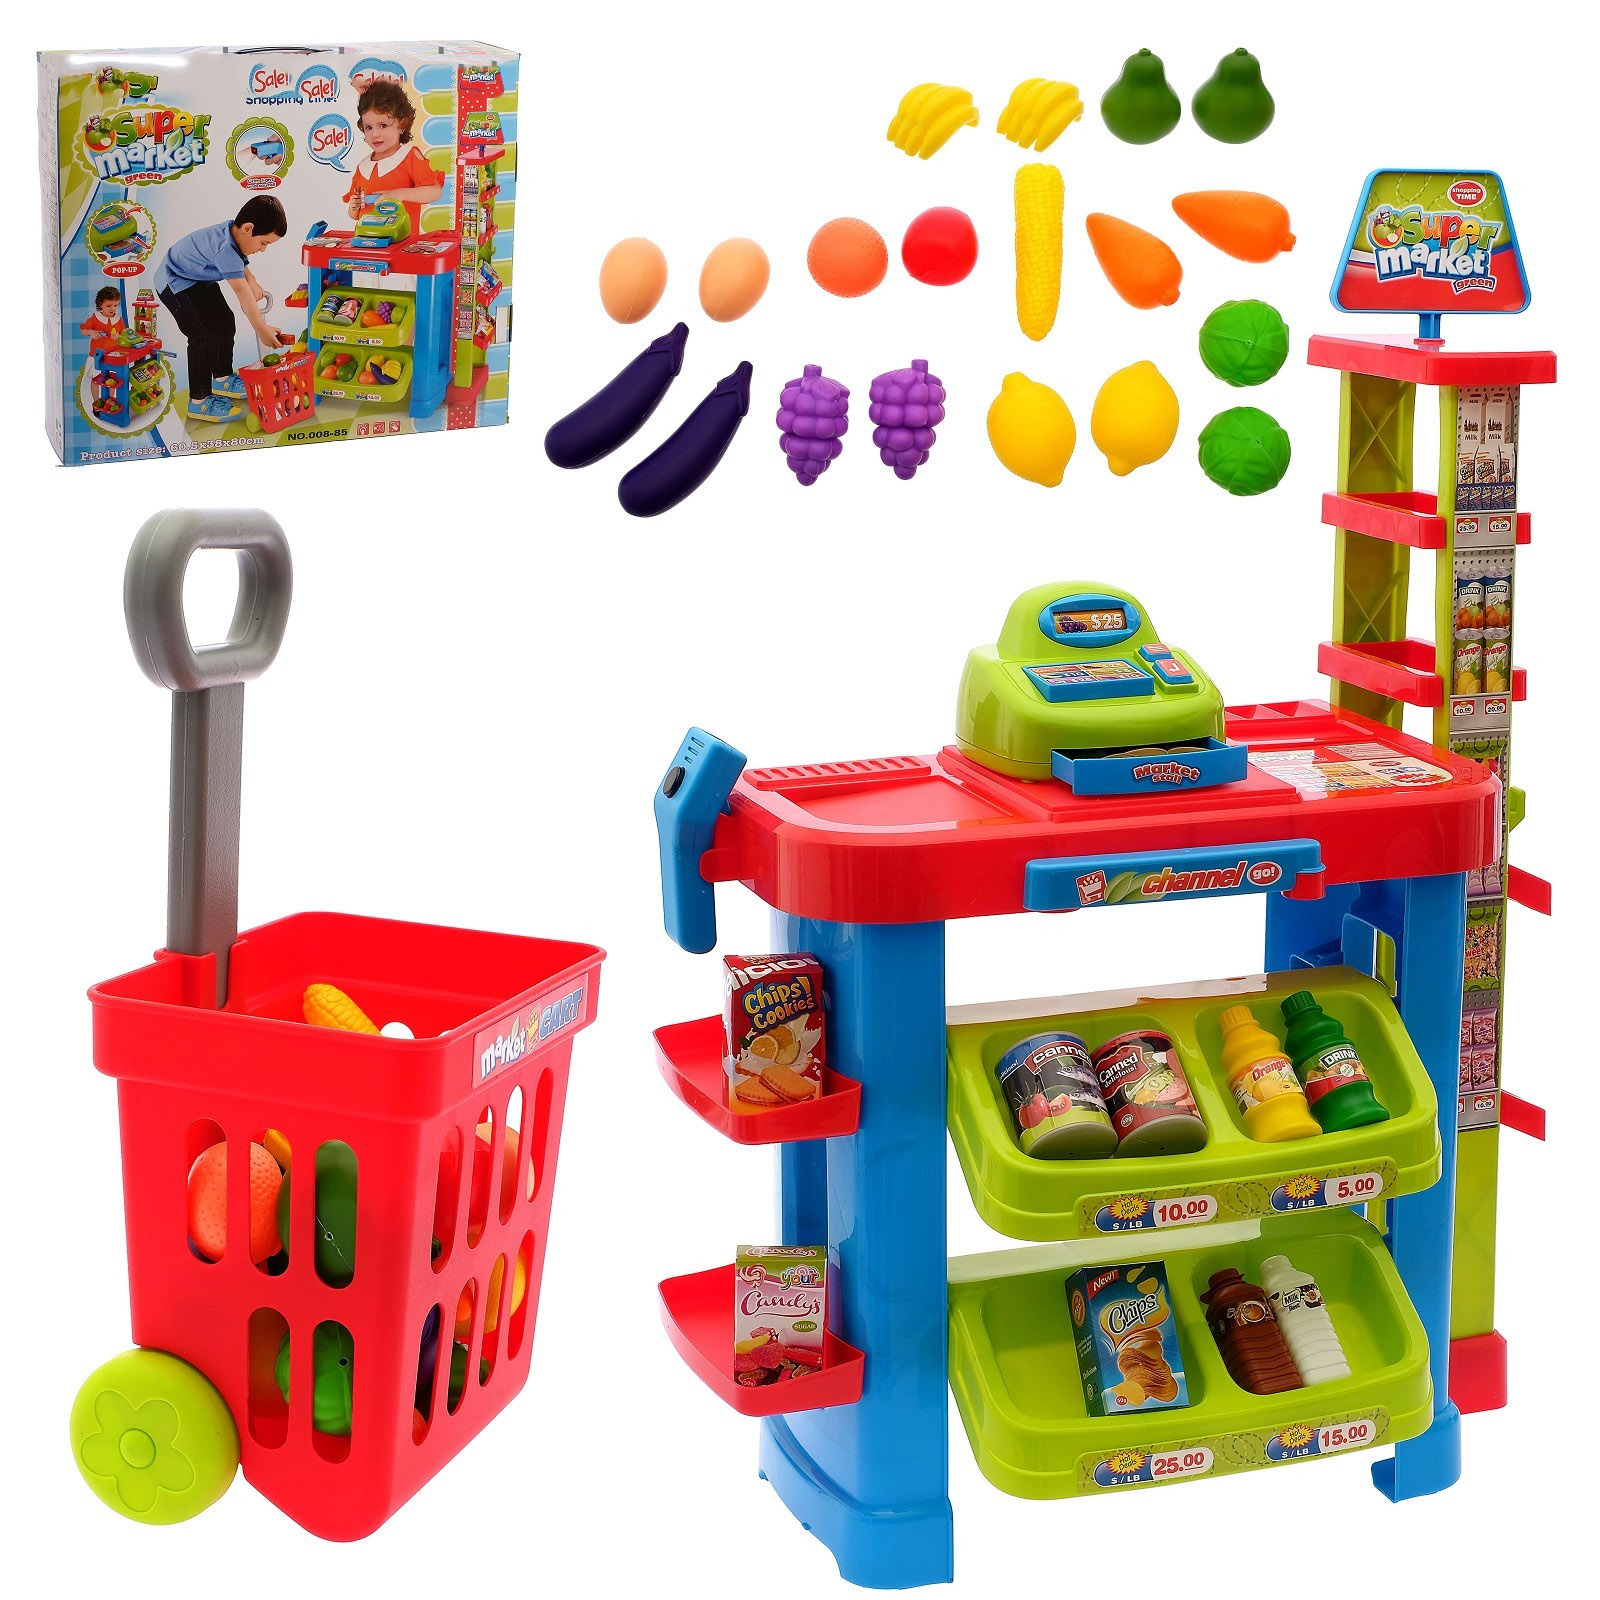 Маркет для игр для детей. Игрушки для детского сада. Игровой набор магазин. Набор игрушек для детей. Игровые наборы для детей.